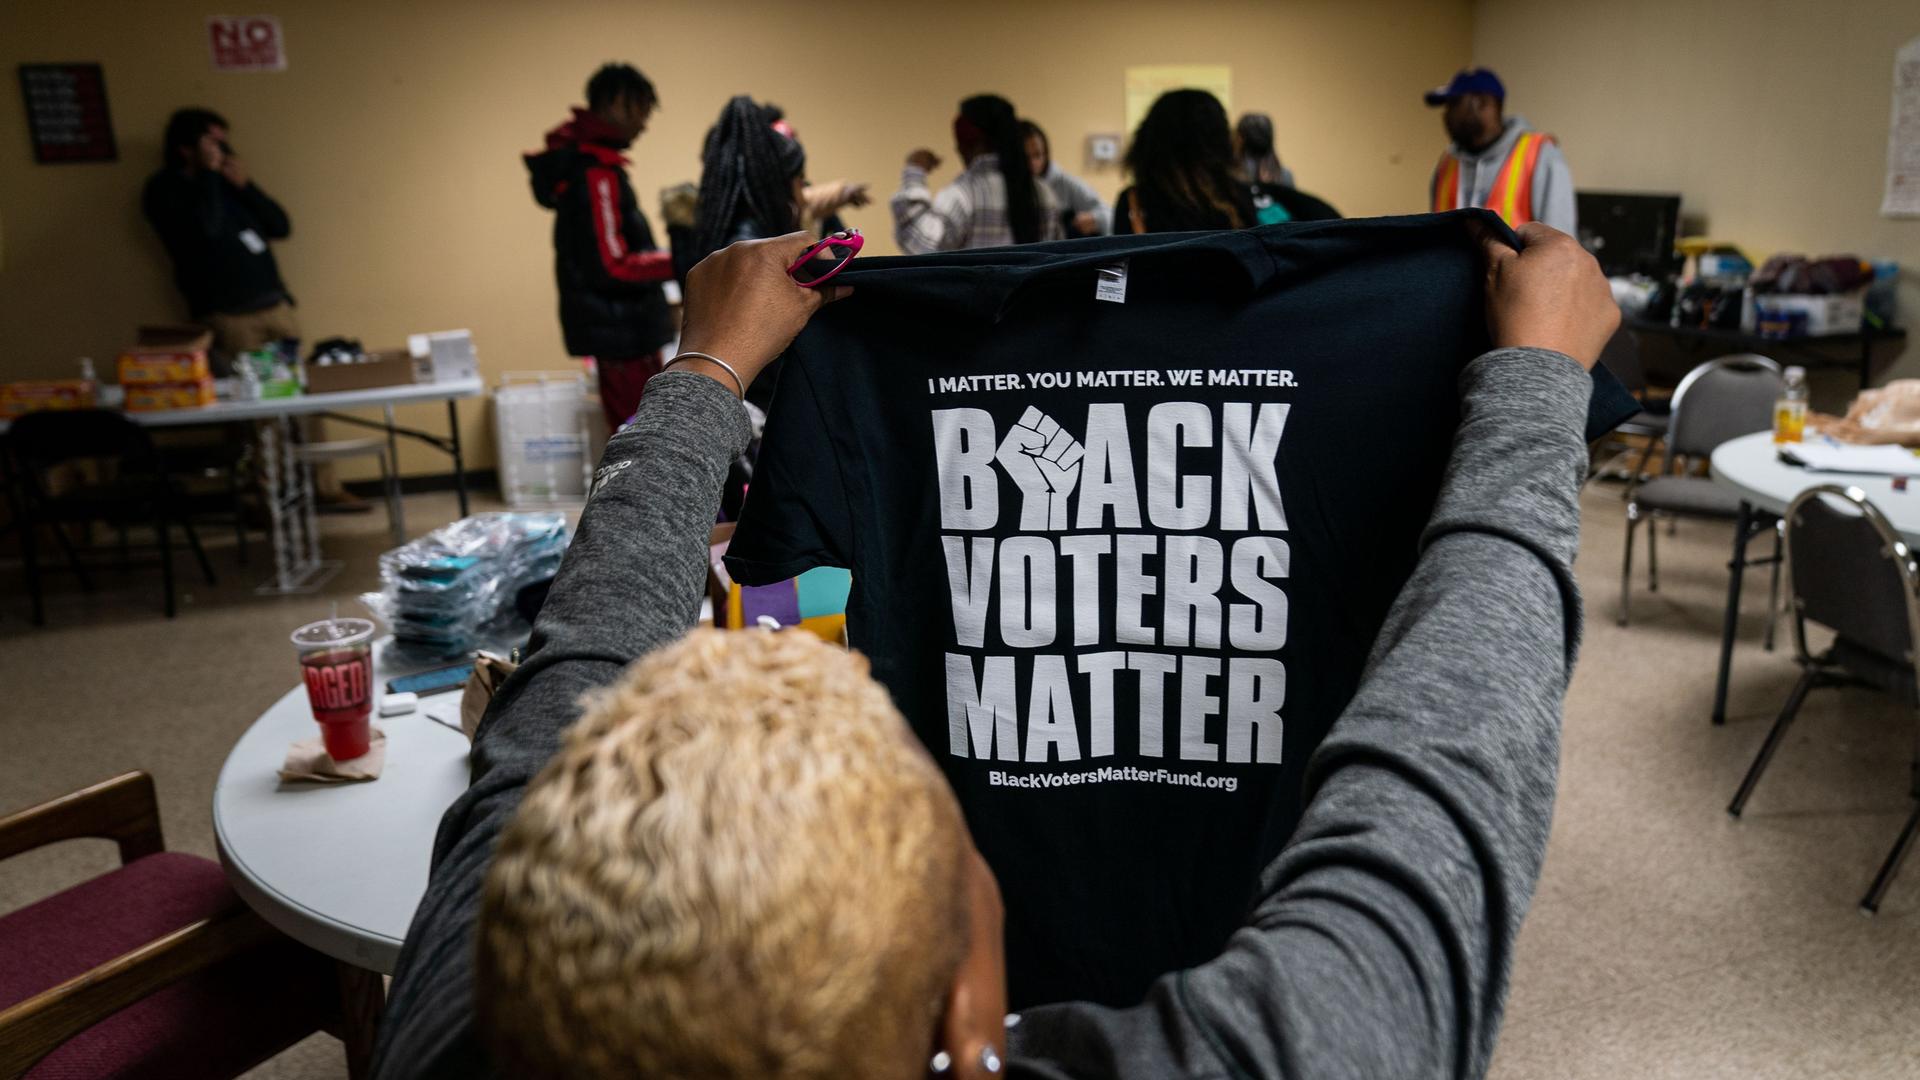 Eine Frau hält ein T-Shirt mit der Aufschrift "Black Voters Matter" in die Höhe.